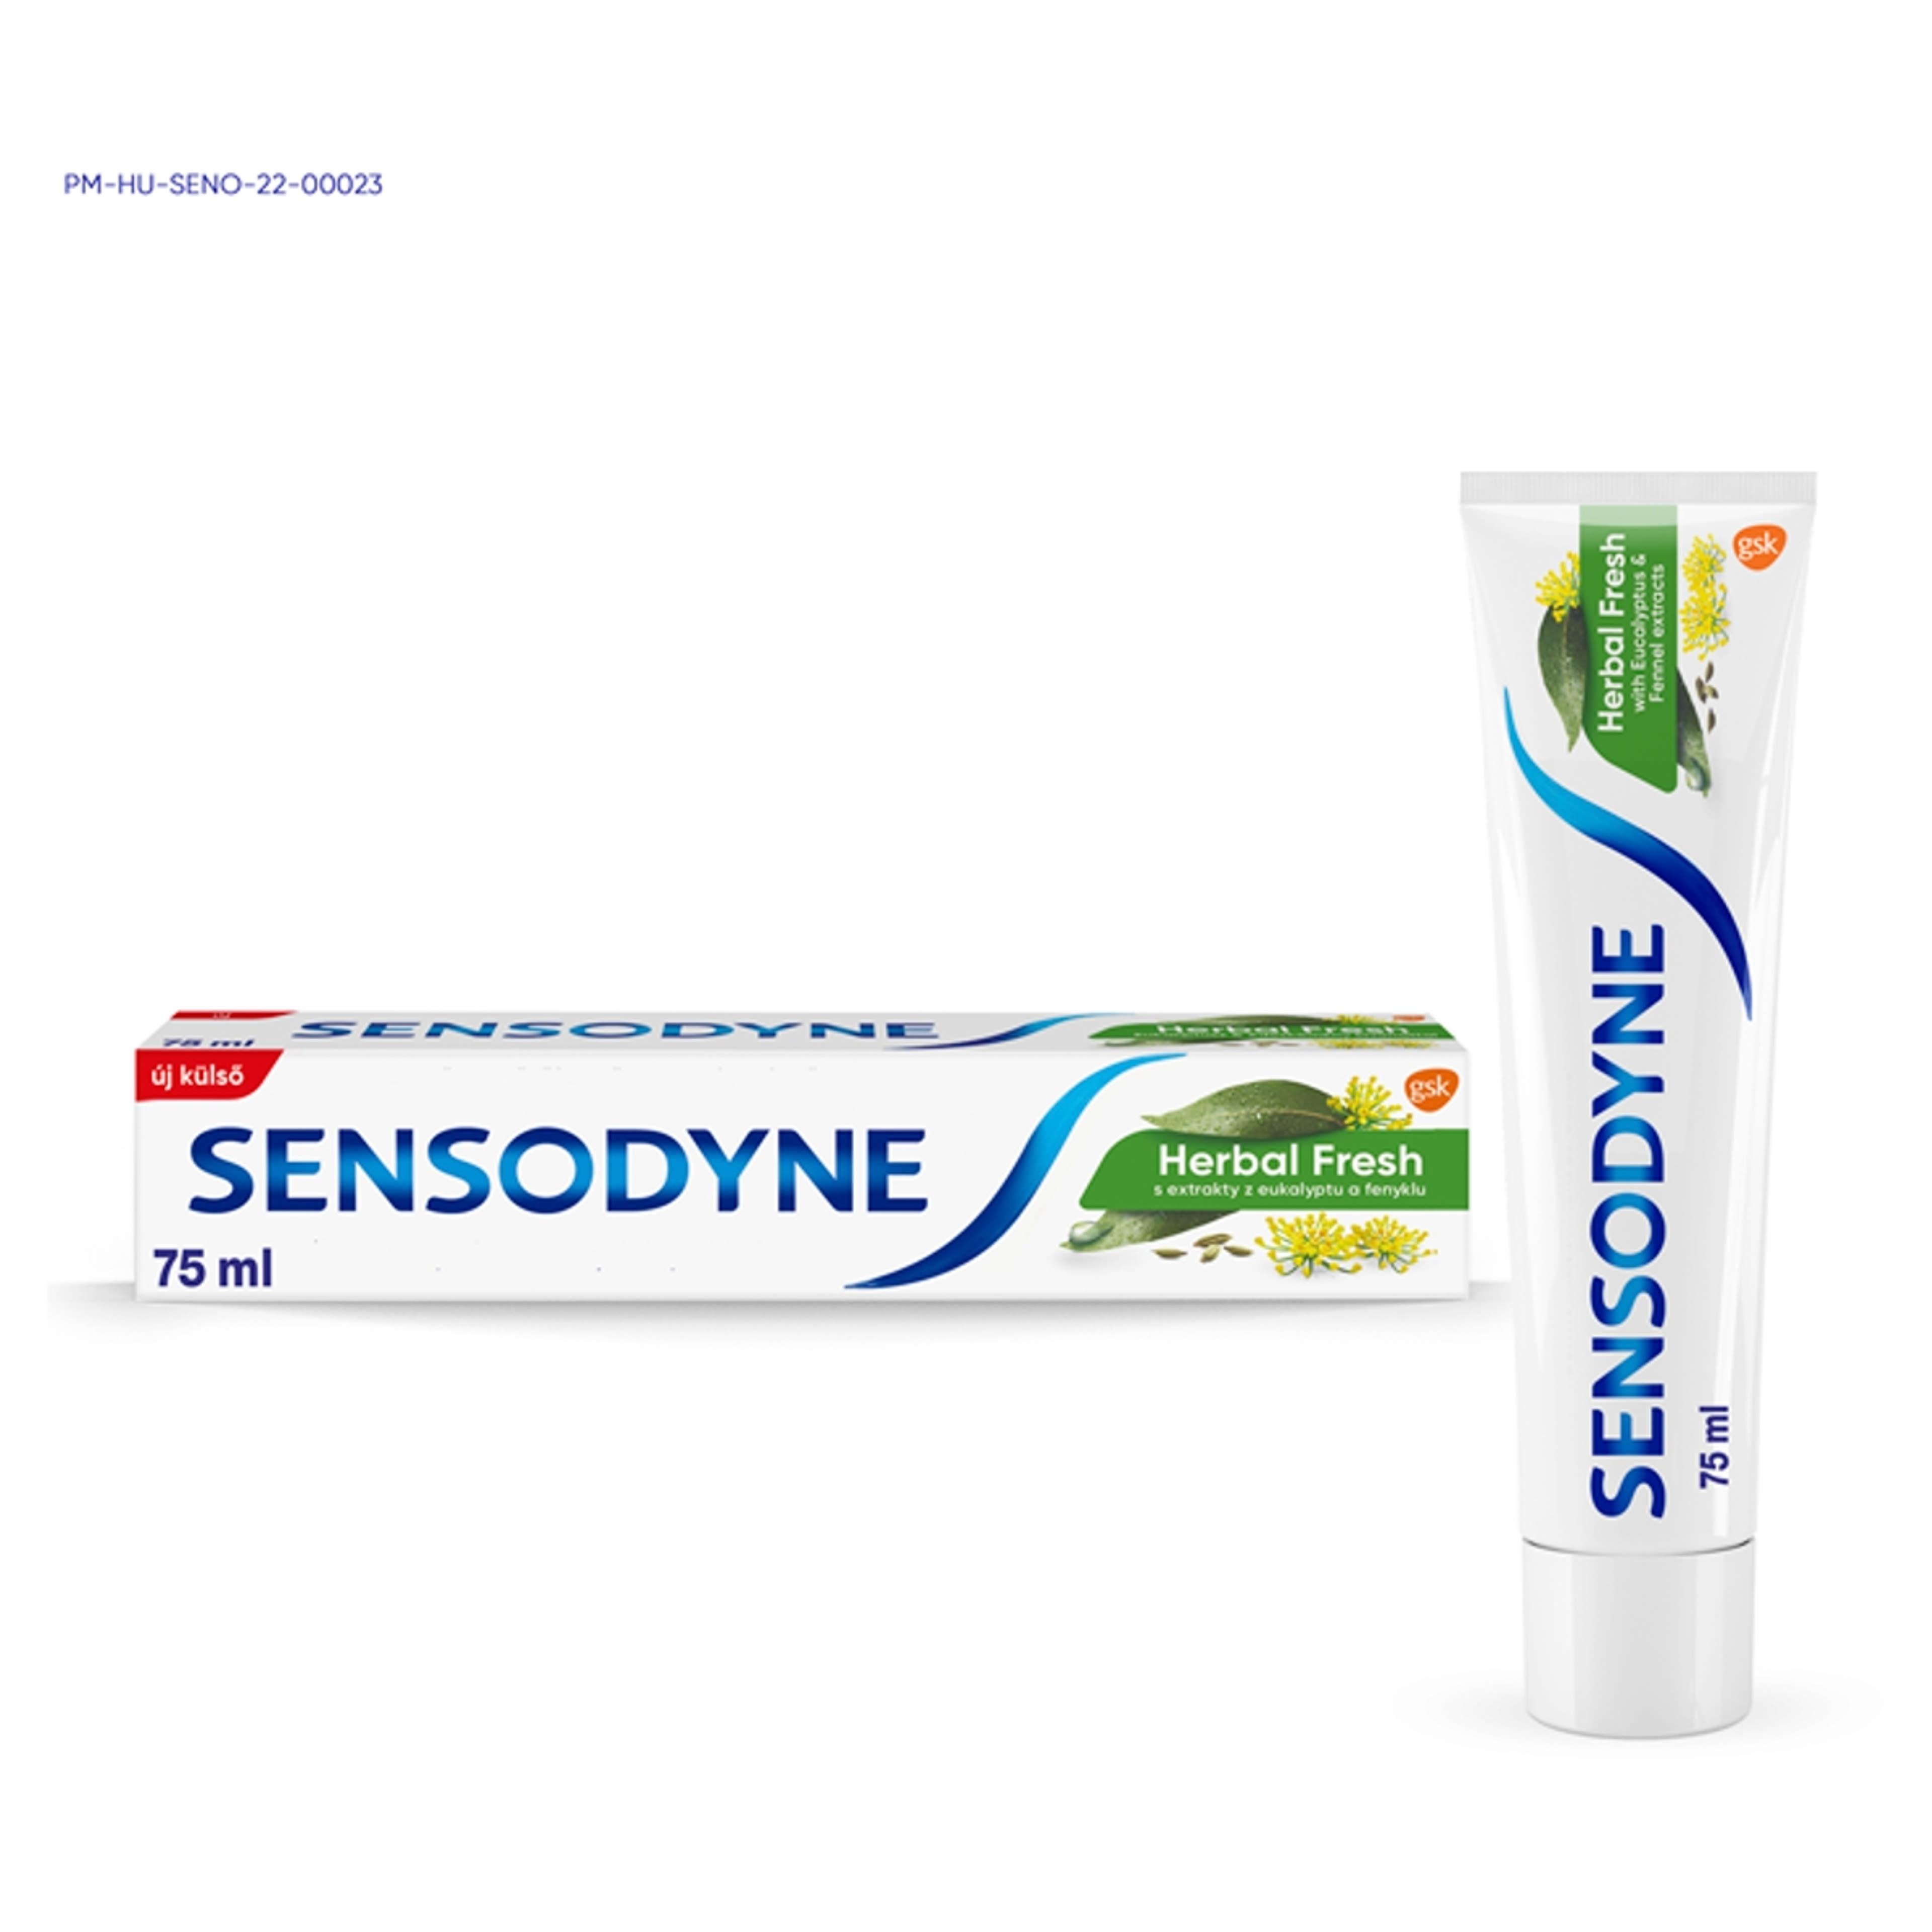 Sensodyne Herbal Fresh fogkrém - 75 ml-2